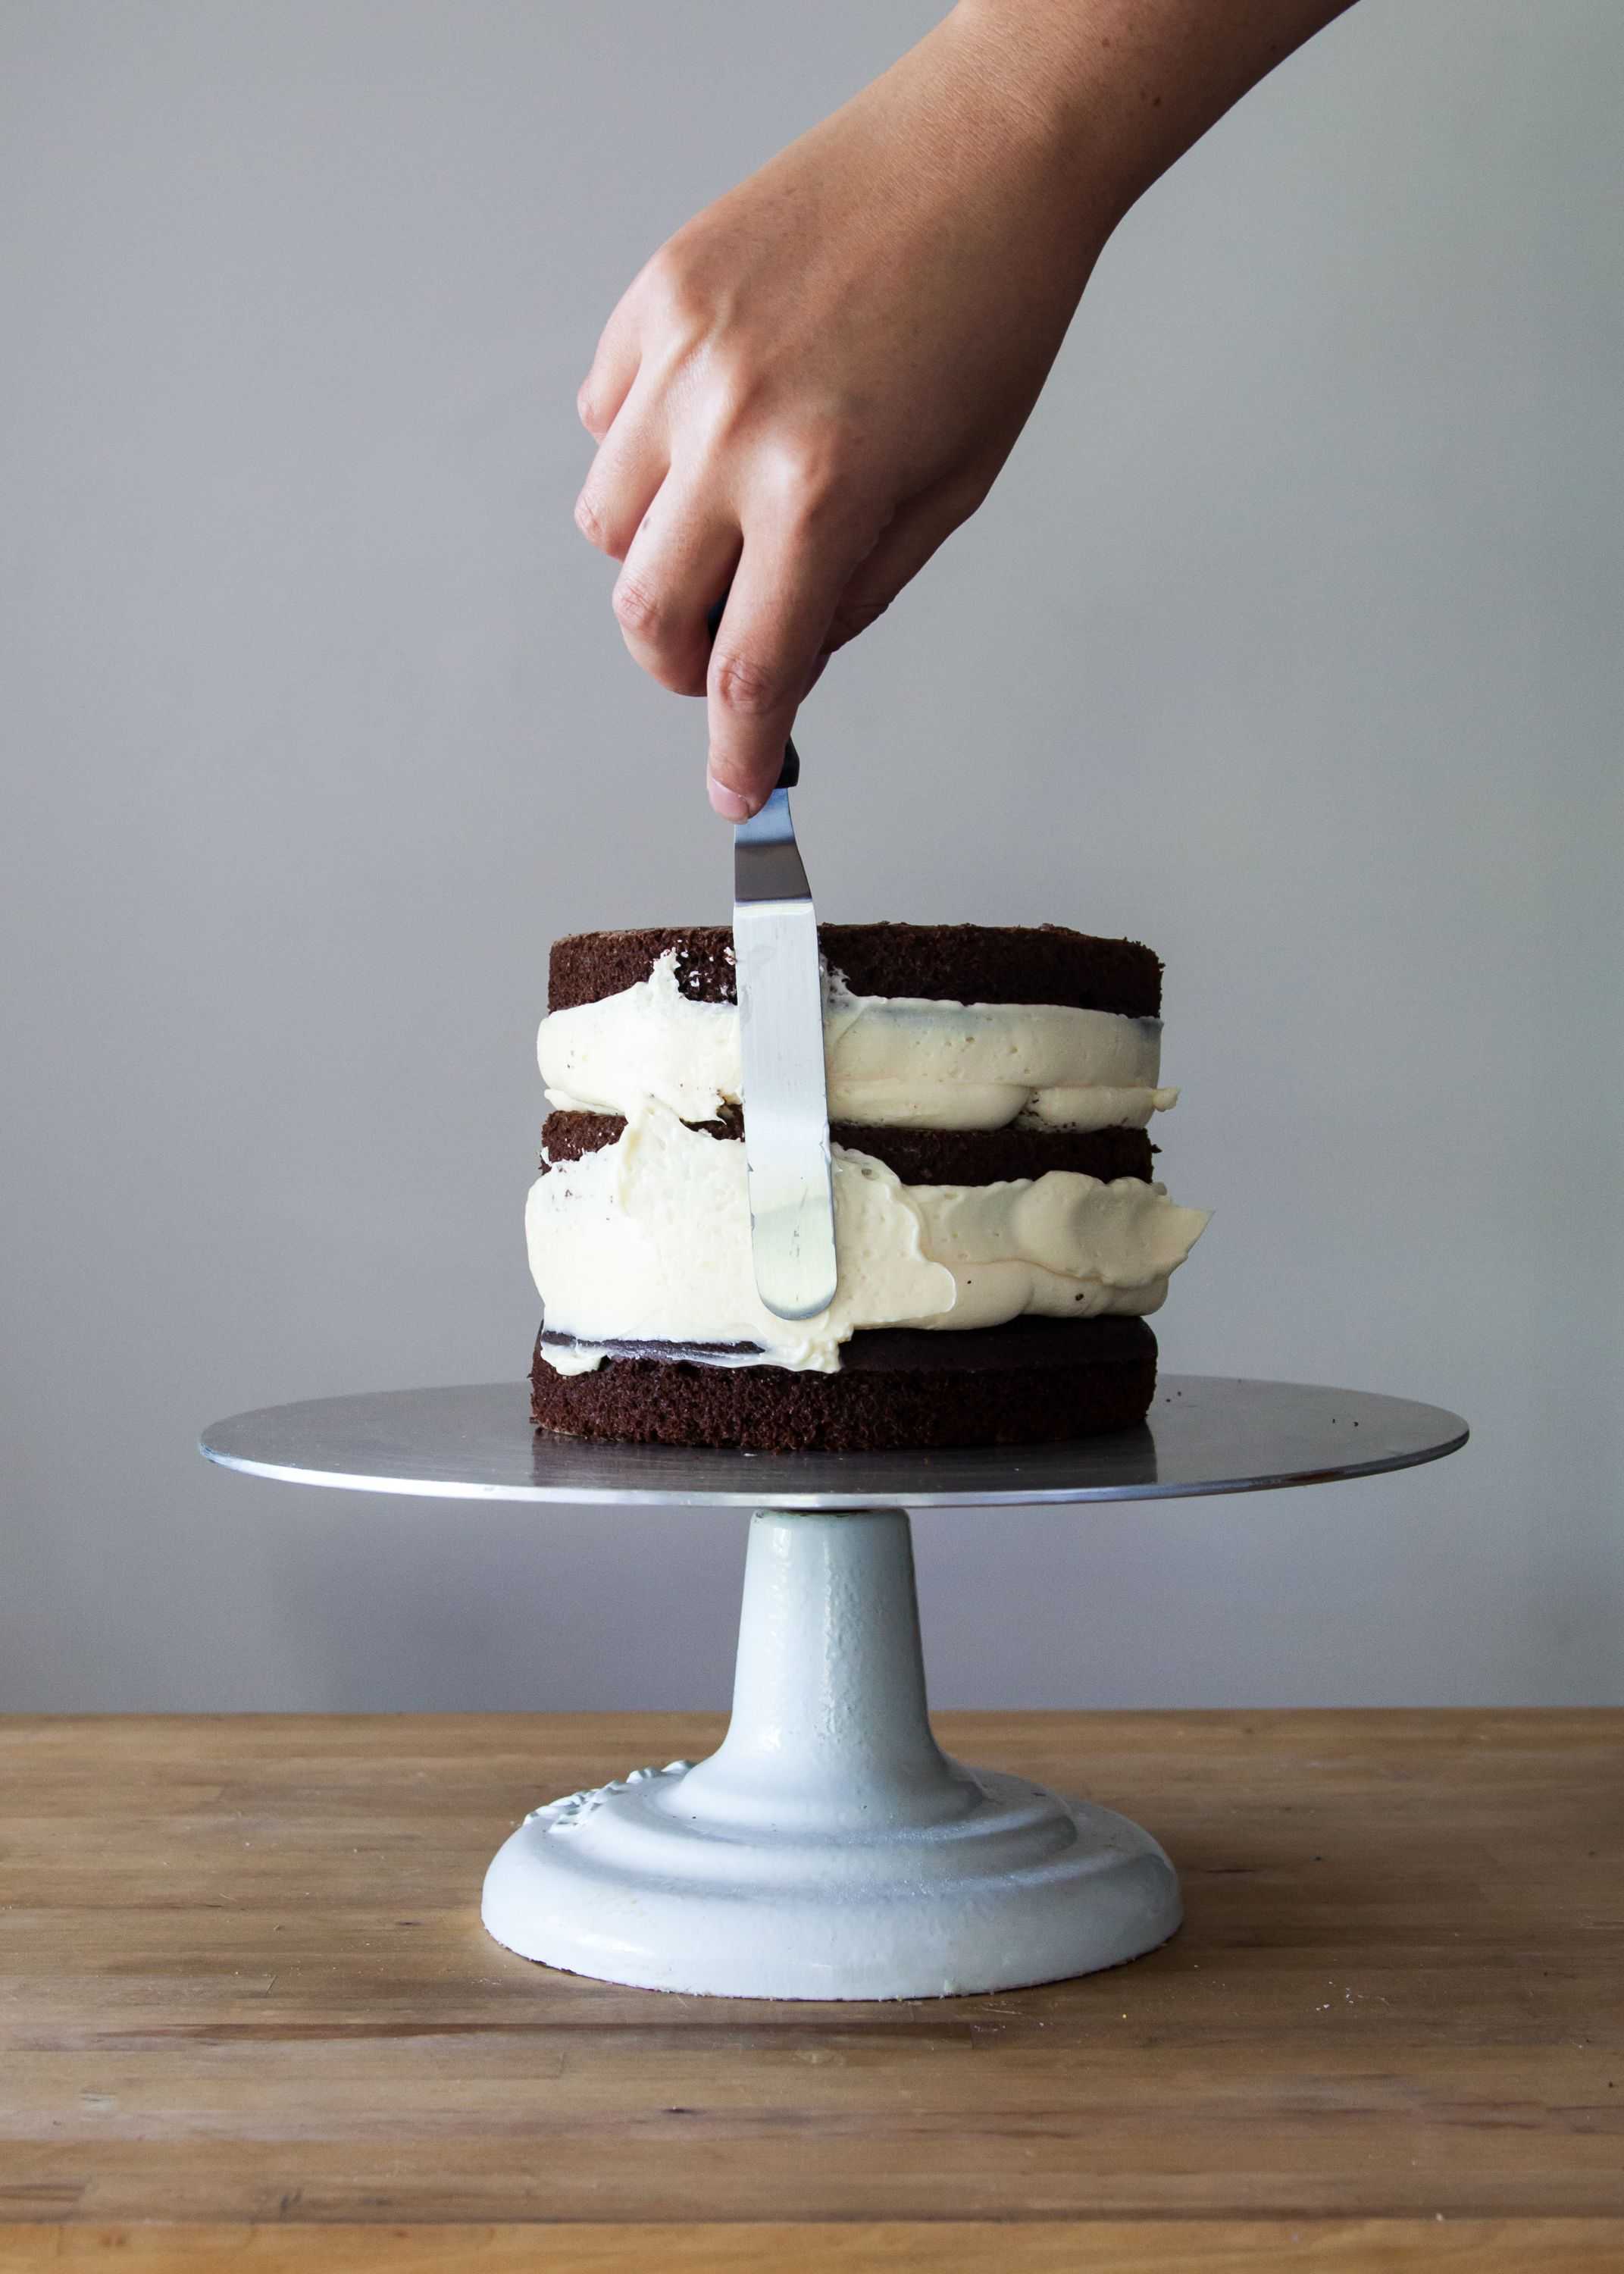 Крем для выравнивания торта - как готовить масляный, сливочный, шоколадный или белковый